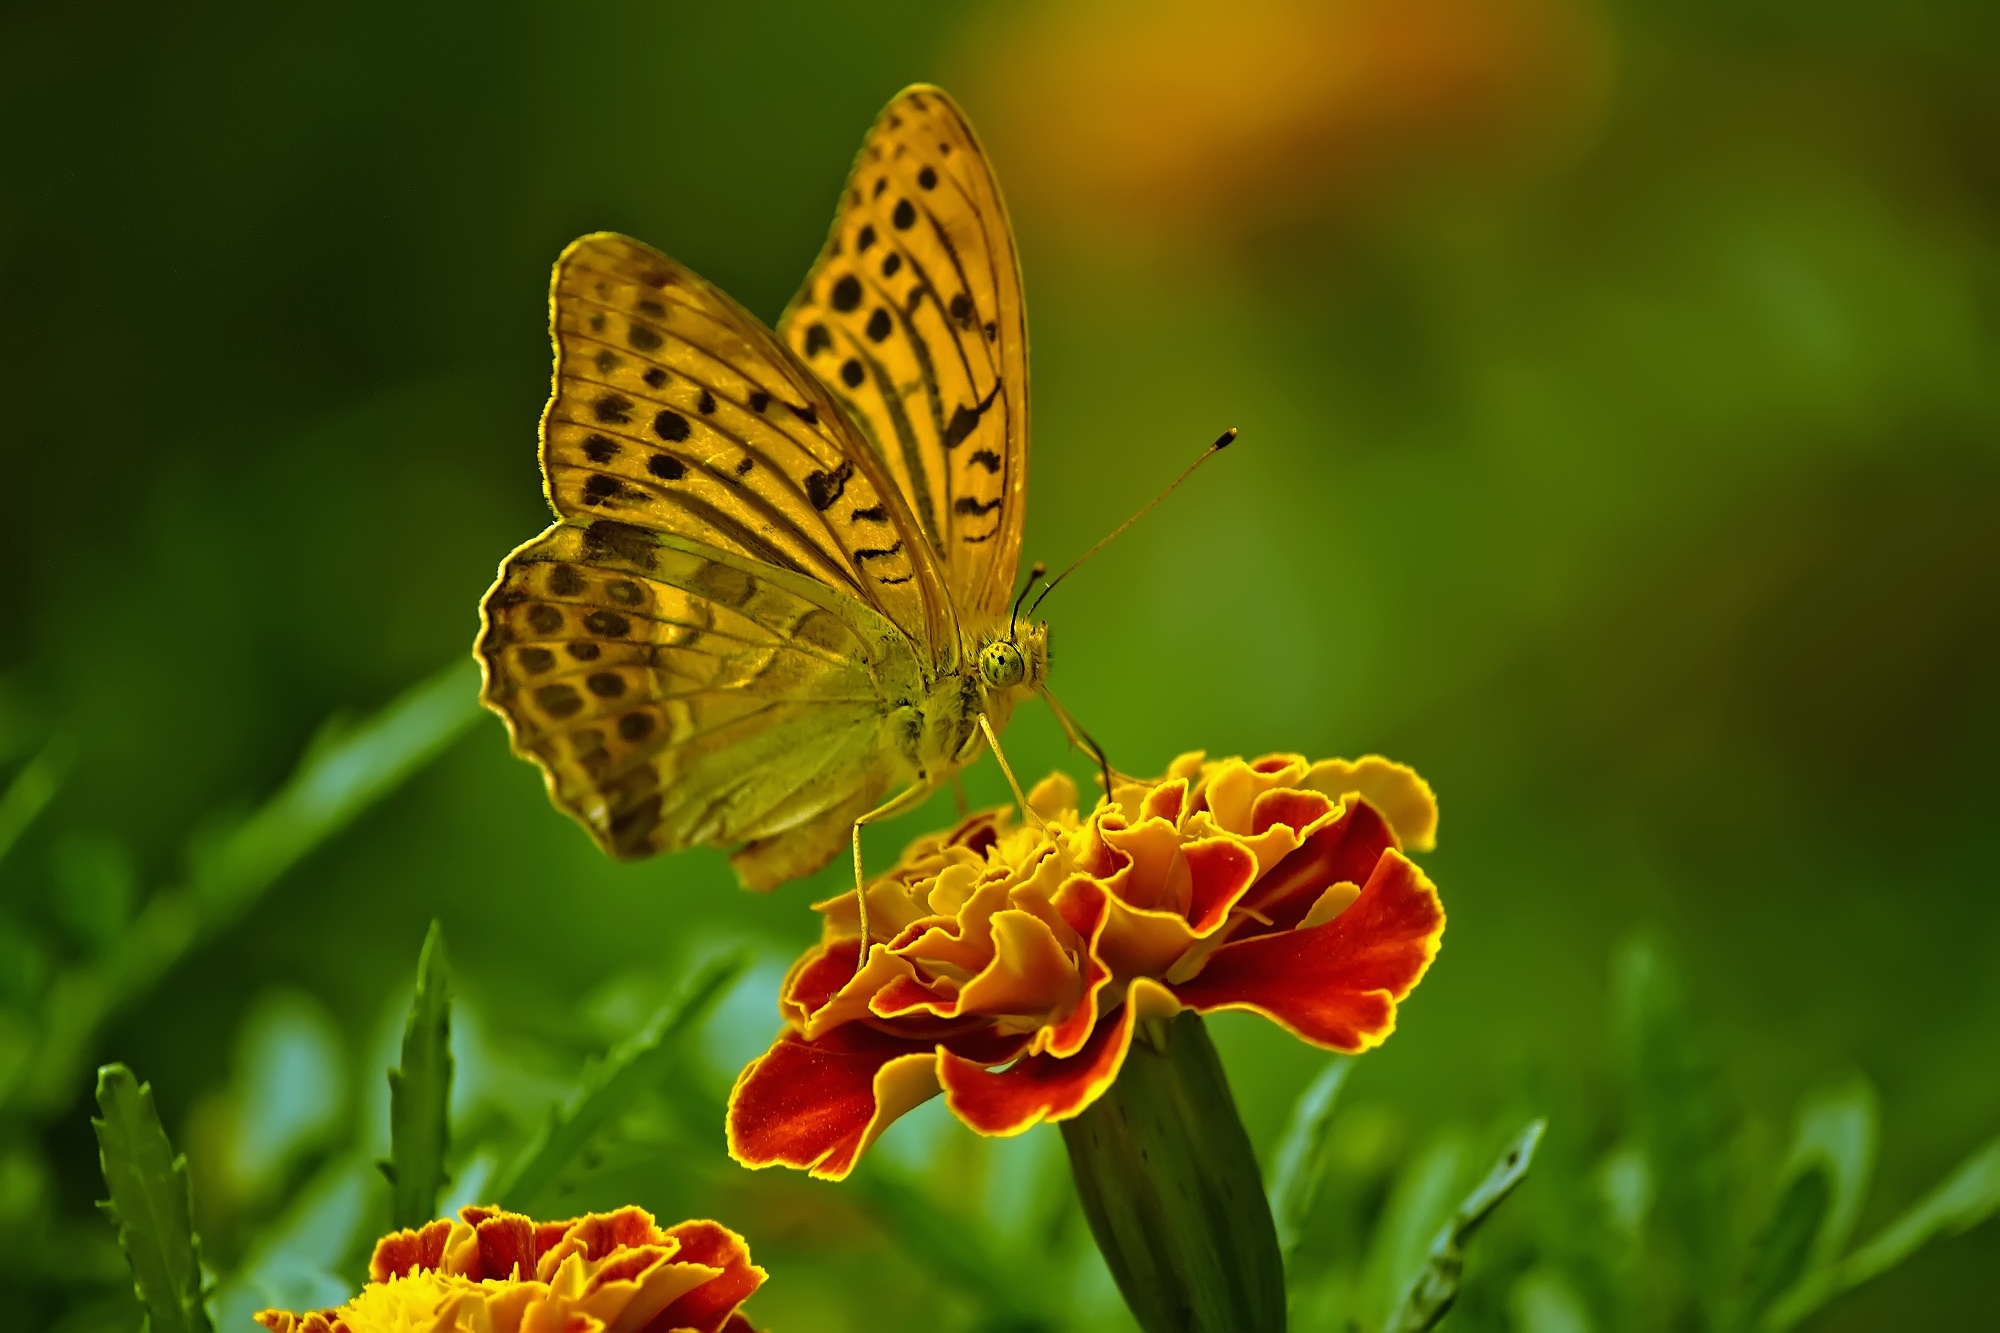 Descarga gratuita de fondo de pantalla para móvil de Animales, Flor, Insecto, Mariposa, Maravilla, Macrofotografía.